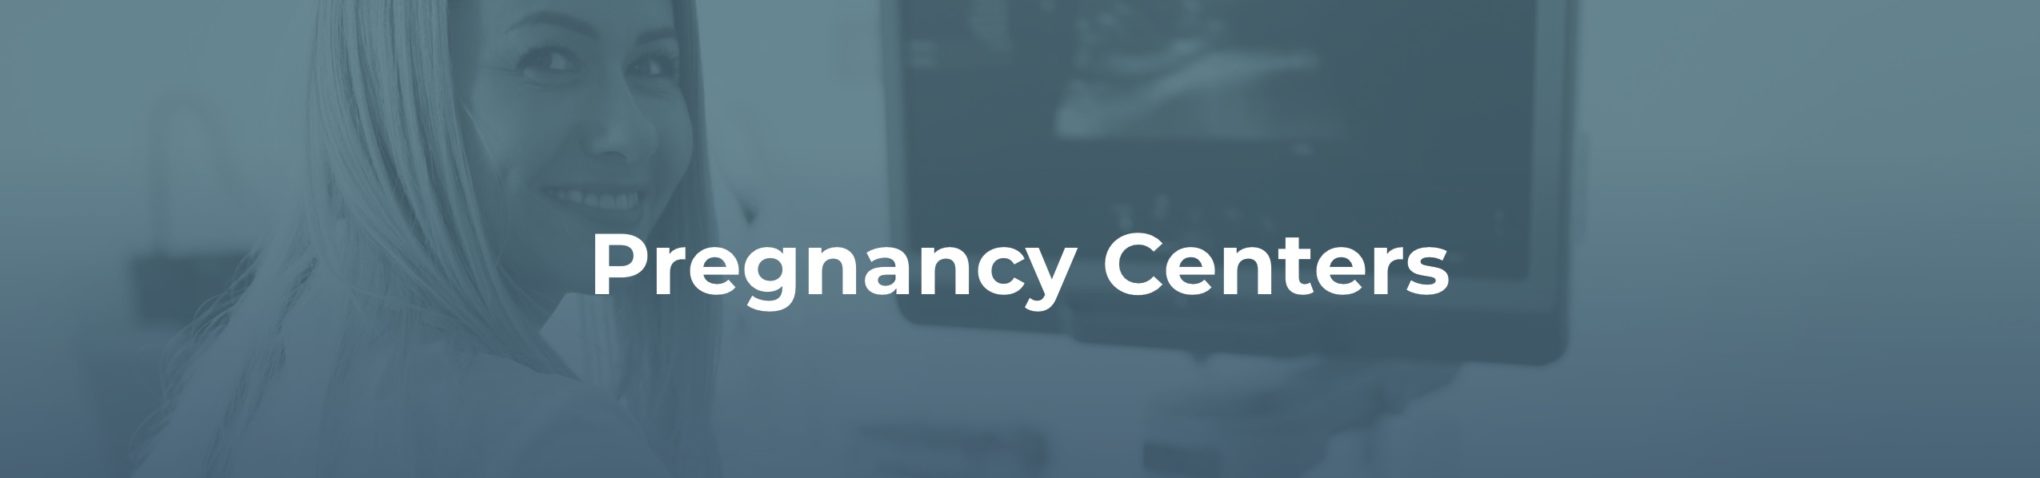 pregnancy center marketing information